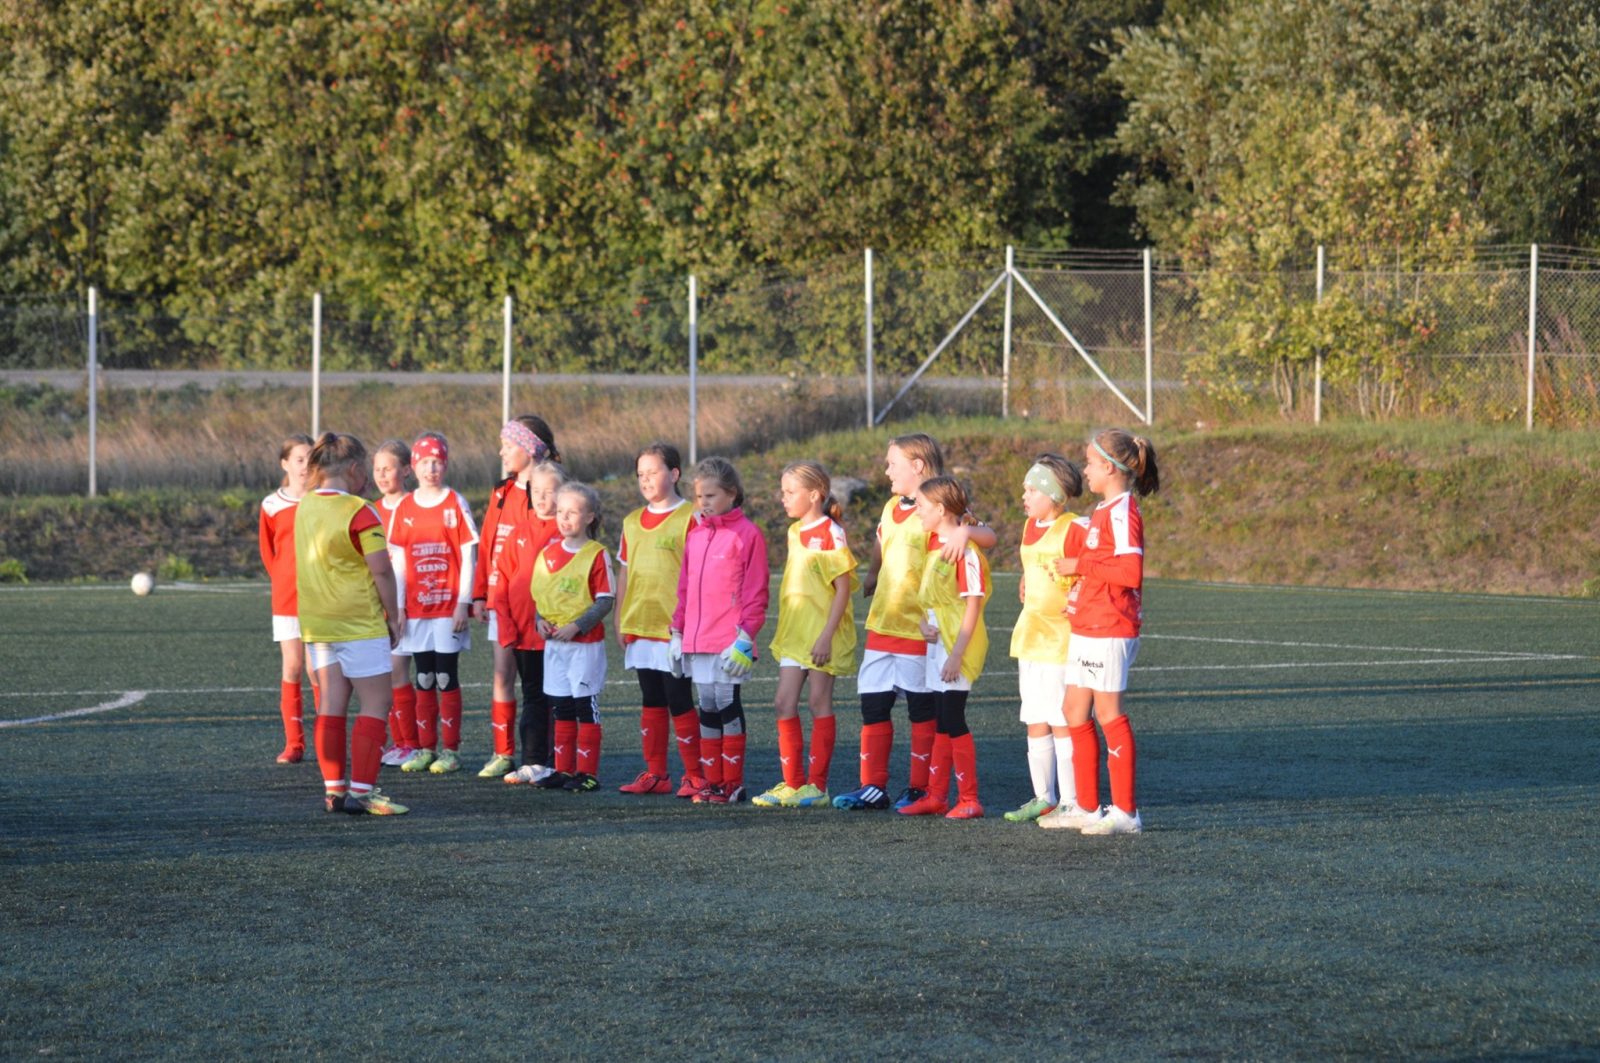 Read more about the article T10 pelasi kaksi ottelua Närpiössä 5.9.2019